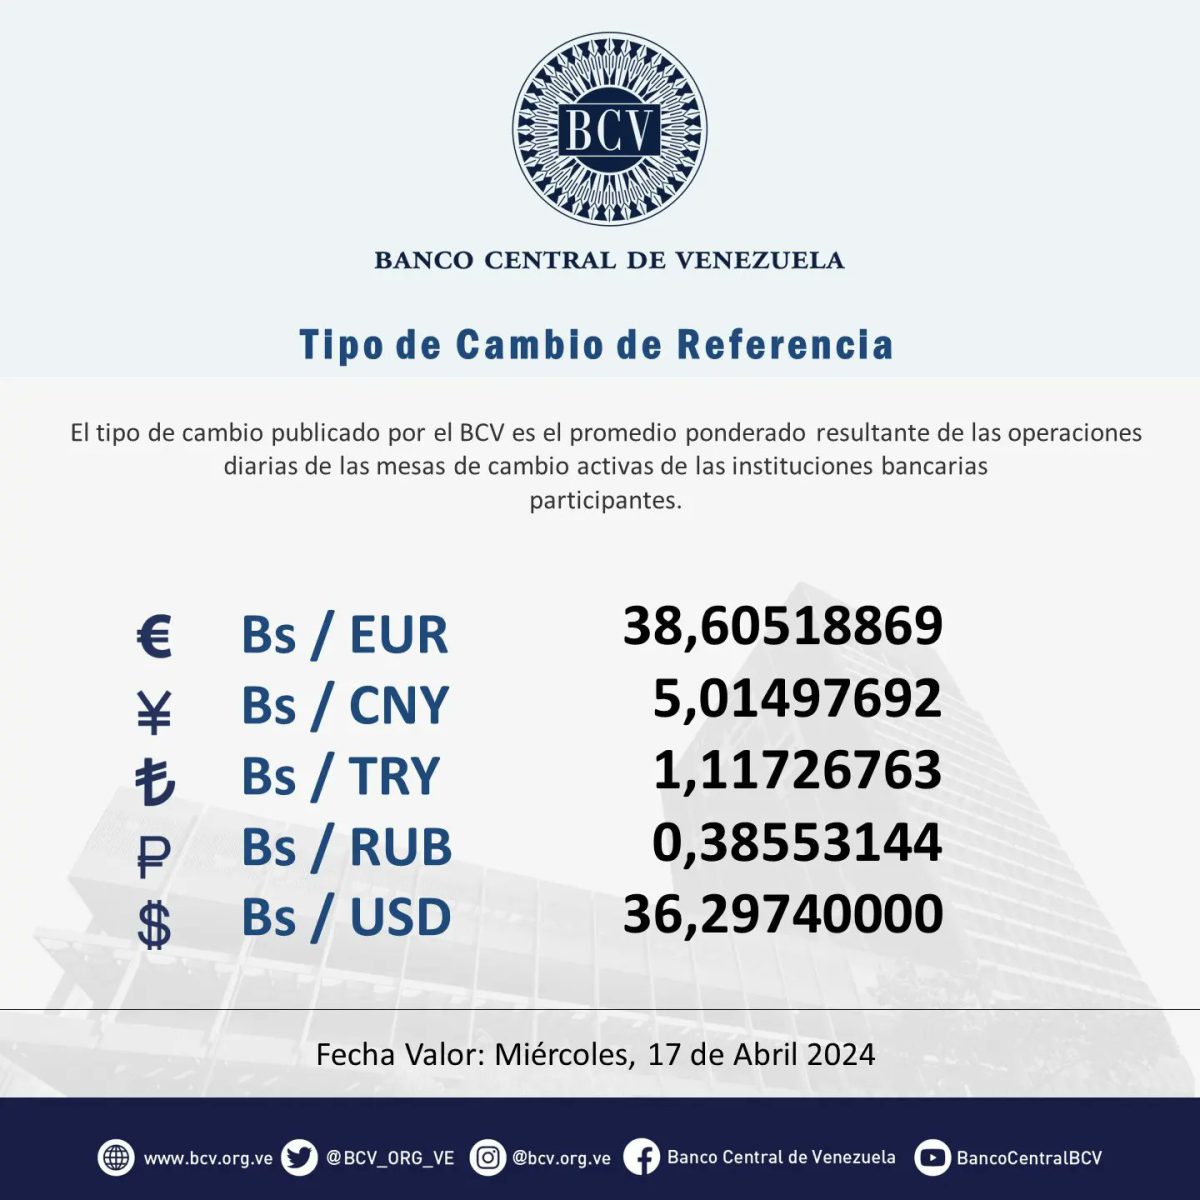 dolartoday en venezuela precio del dolar este miercoles 17 de abril de 2024 laverdaddemonagas.com bcv1